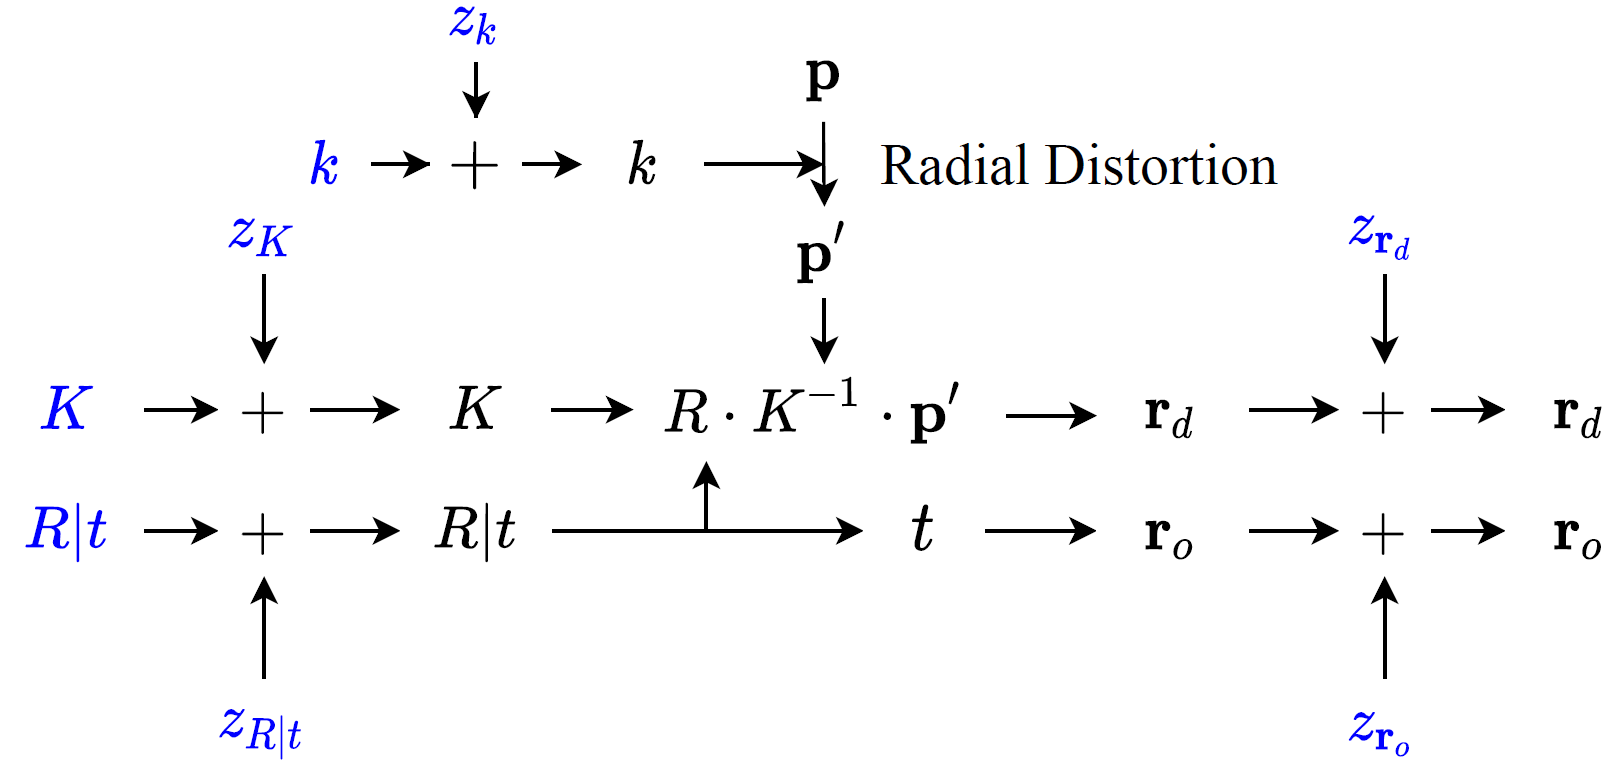 computational graph for rays